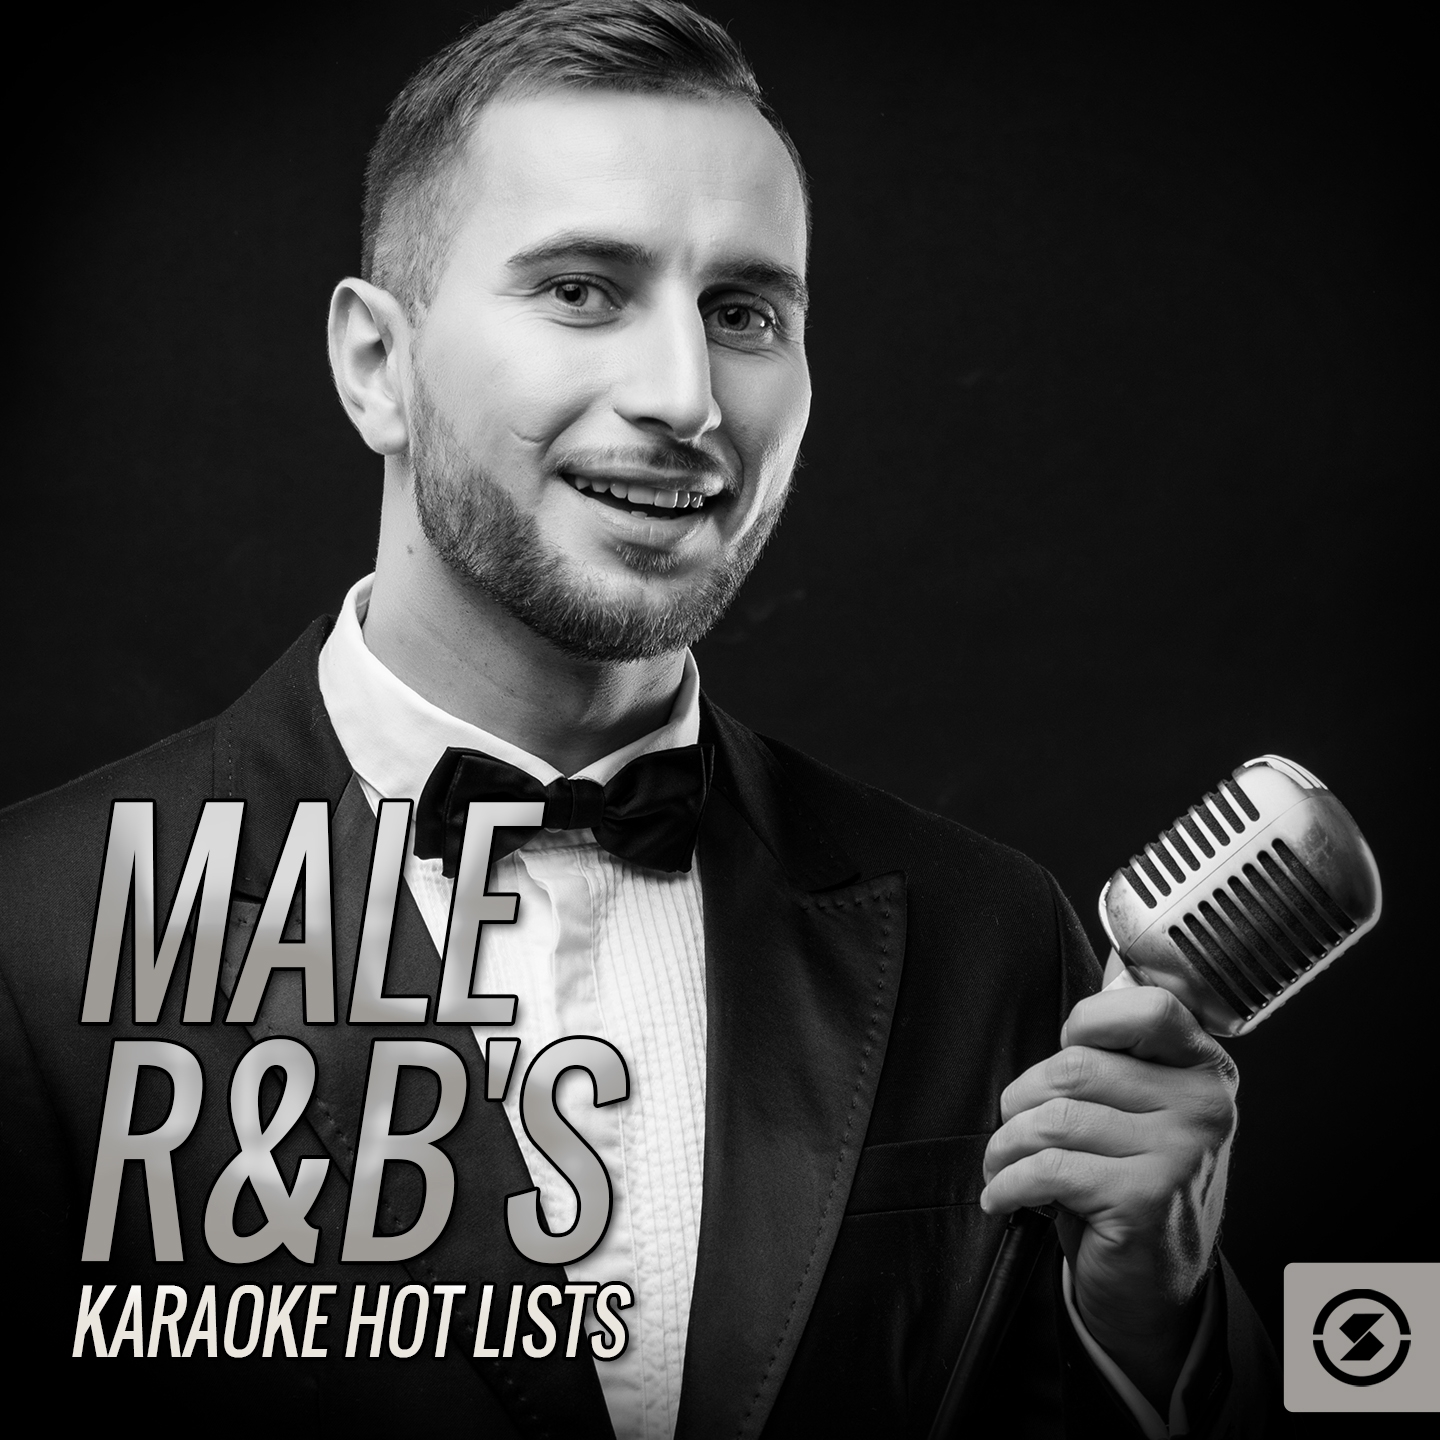 Male R&B's Karaoke Hot Lists